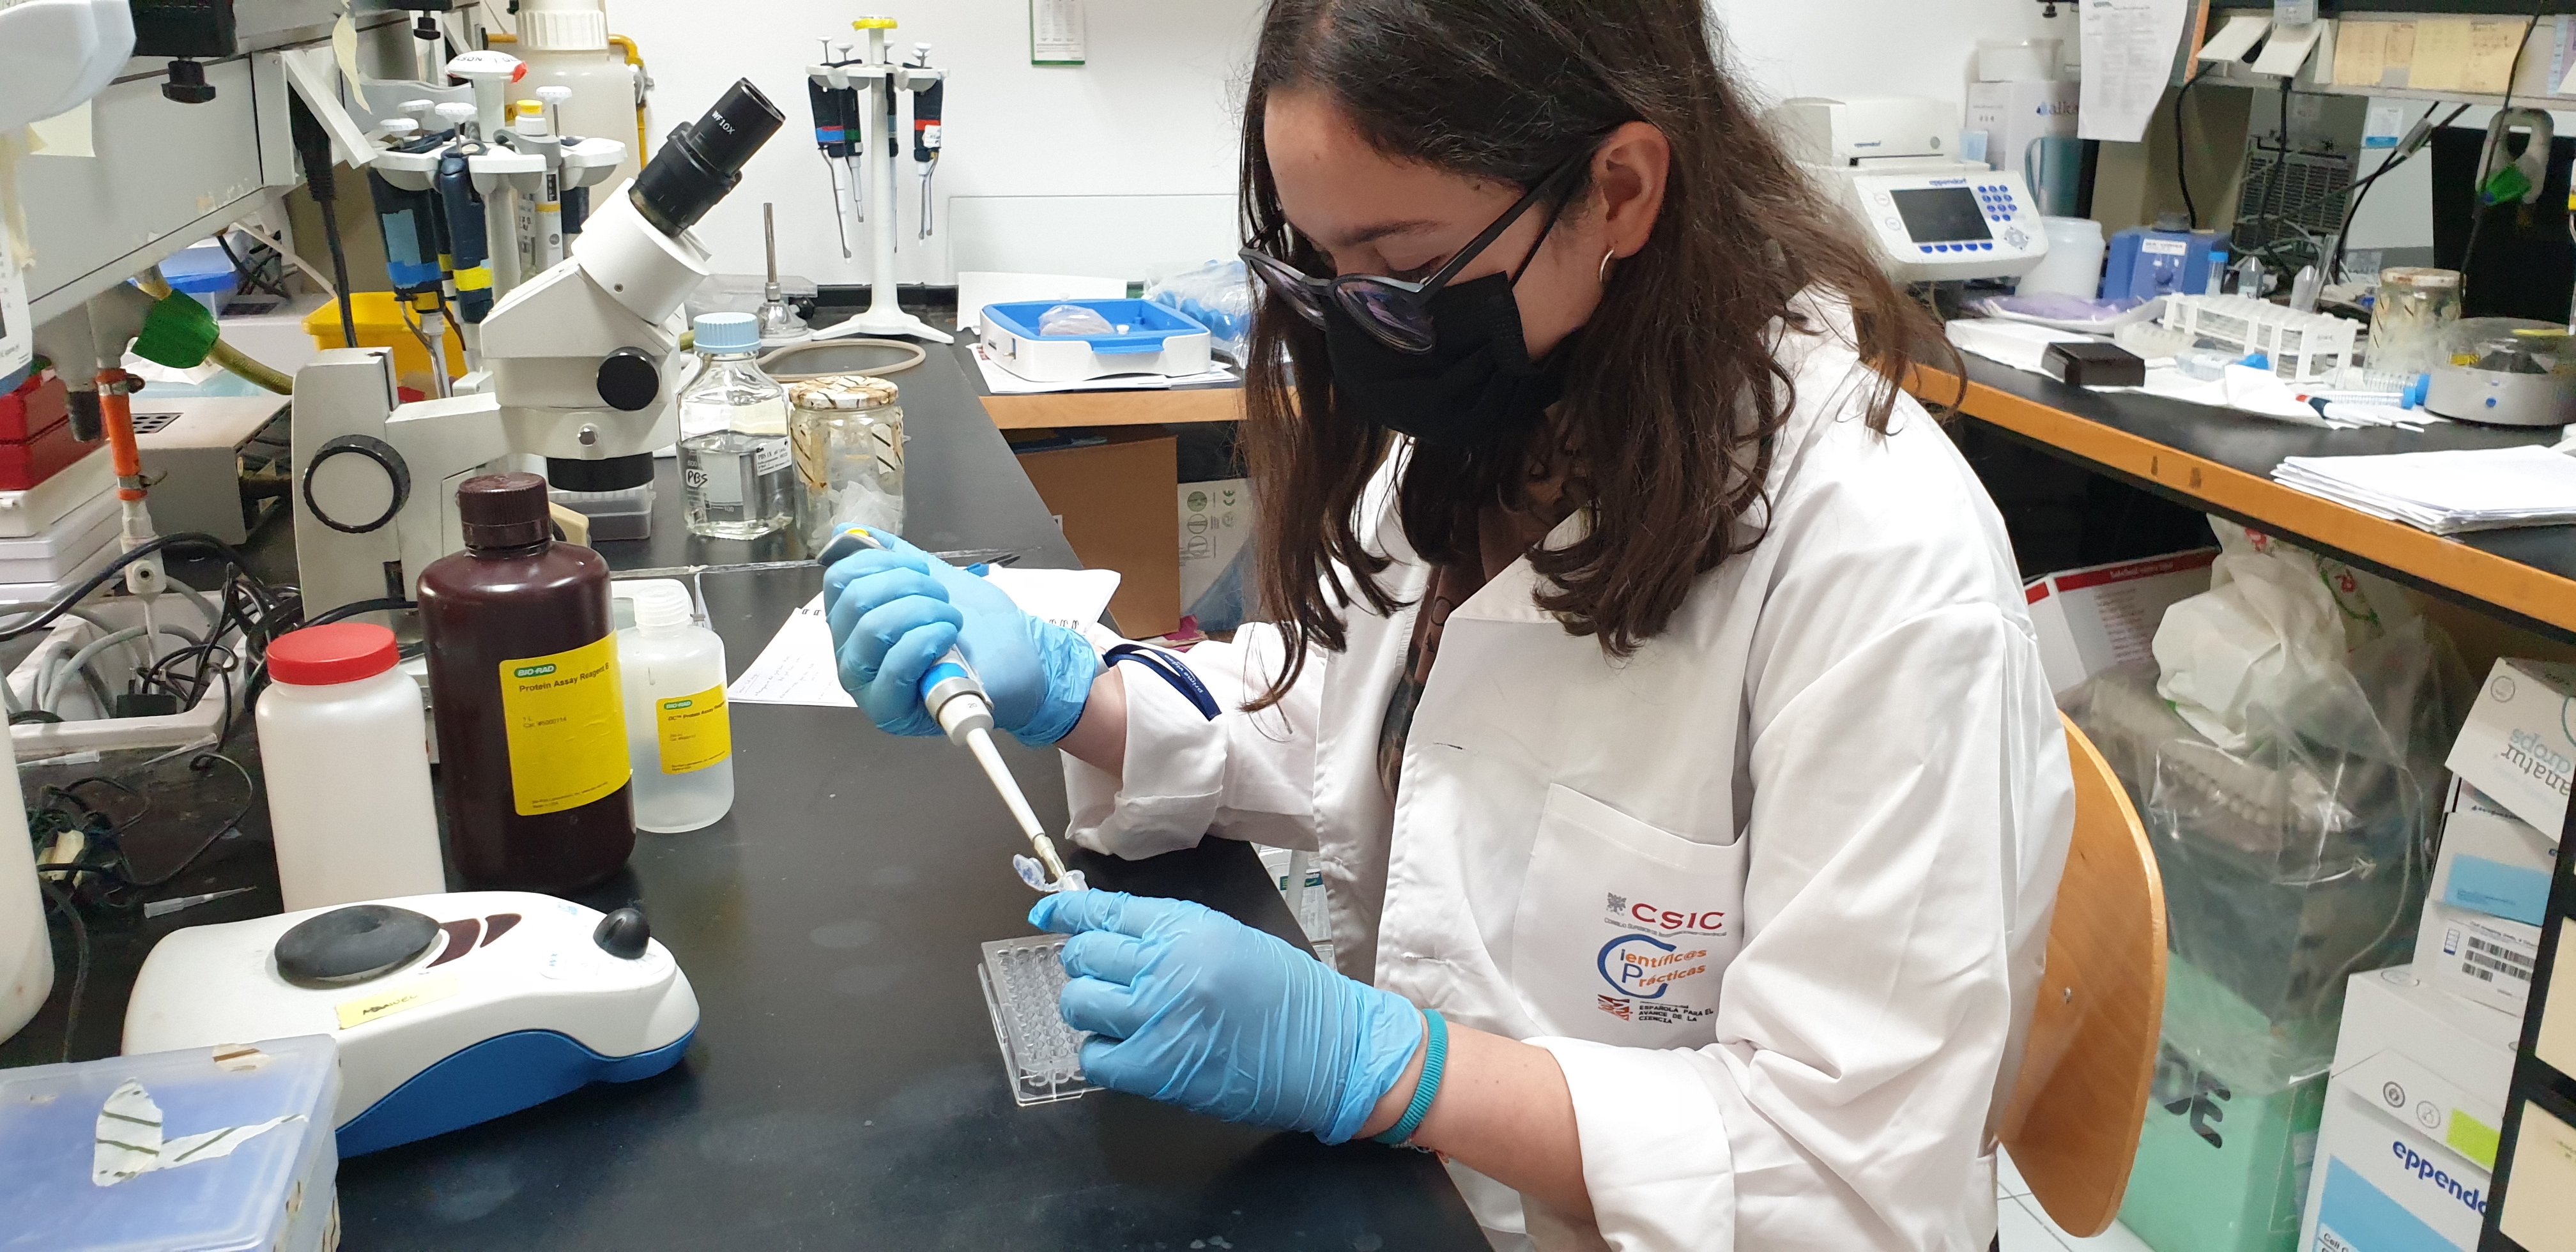 El CSIC y la AEAC ponen en marcha el programa 'Científic@s en prácticas' para promover el talento científico entre el alumnado